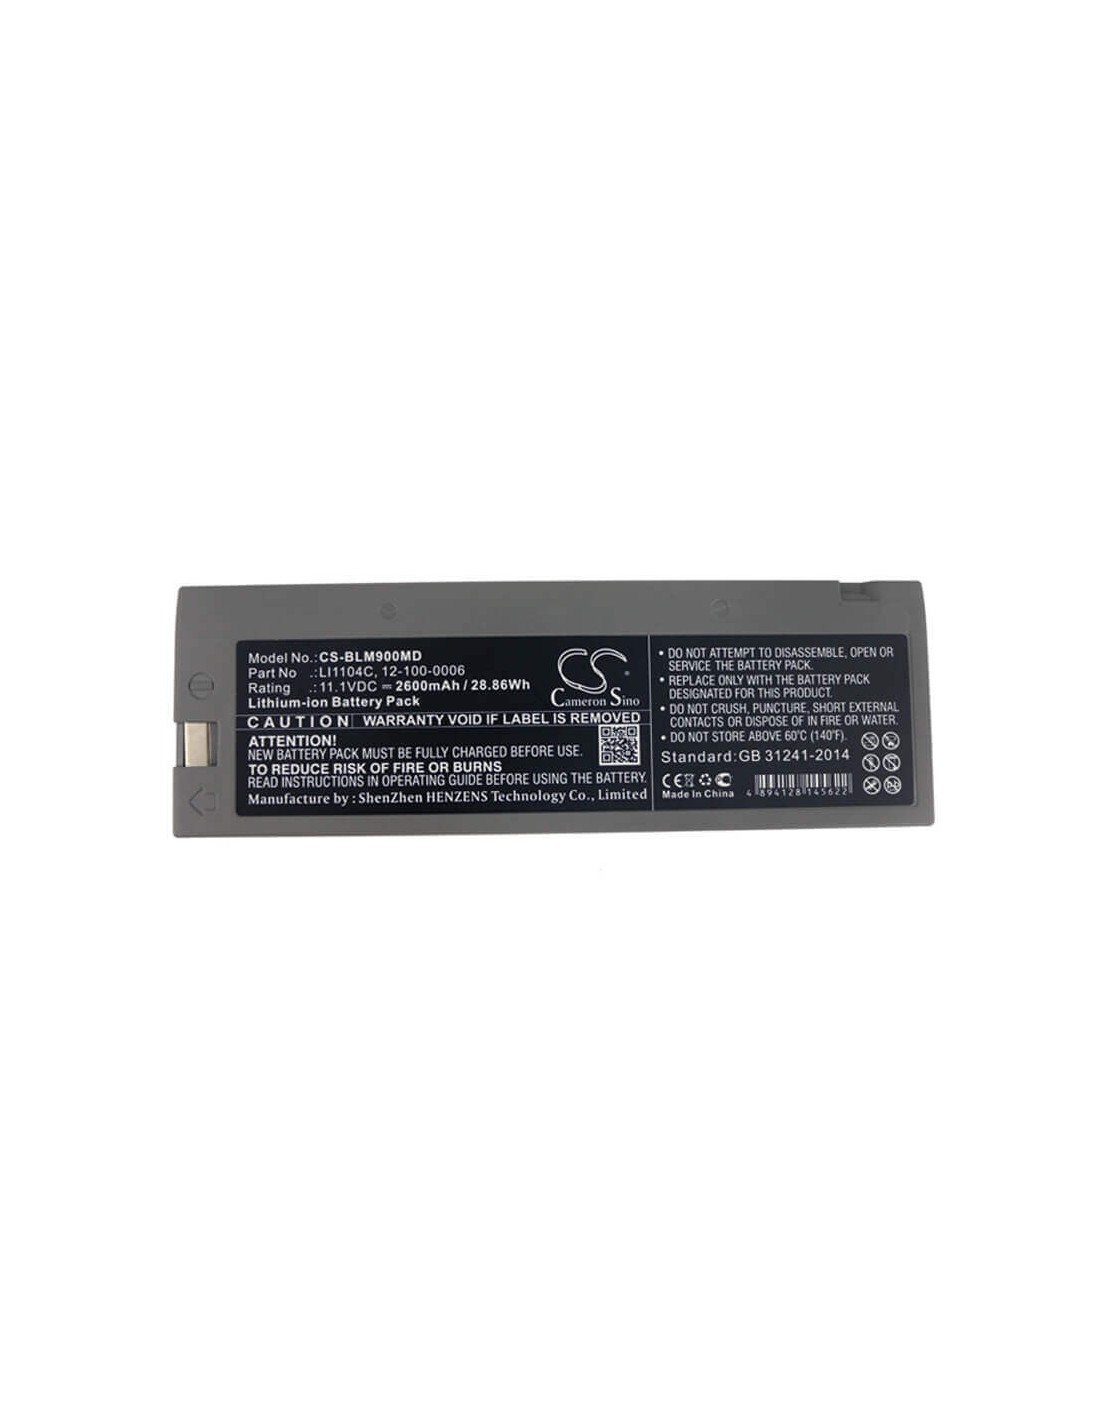 Battery for Biolight, M66, M8000 11.1V, 2600mAh - 28.86Wh